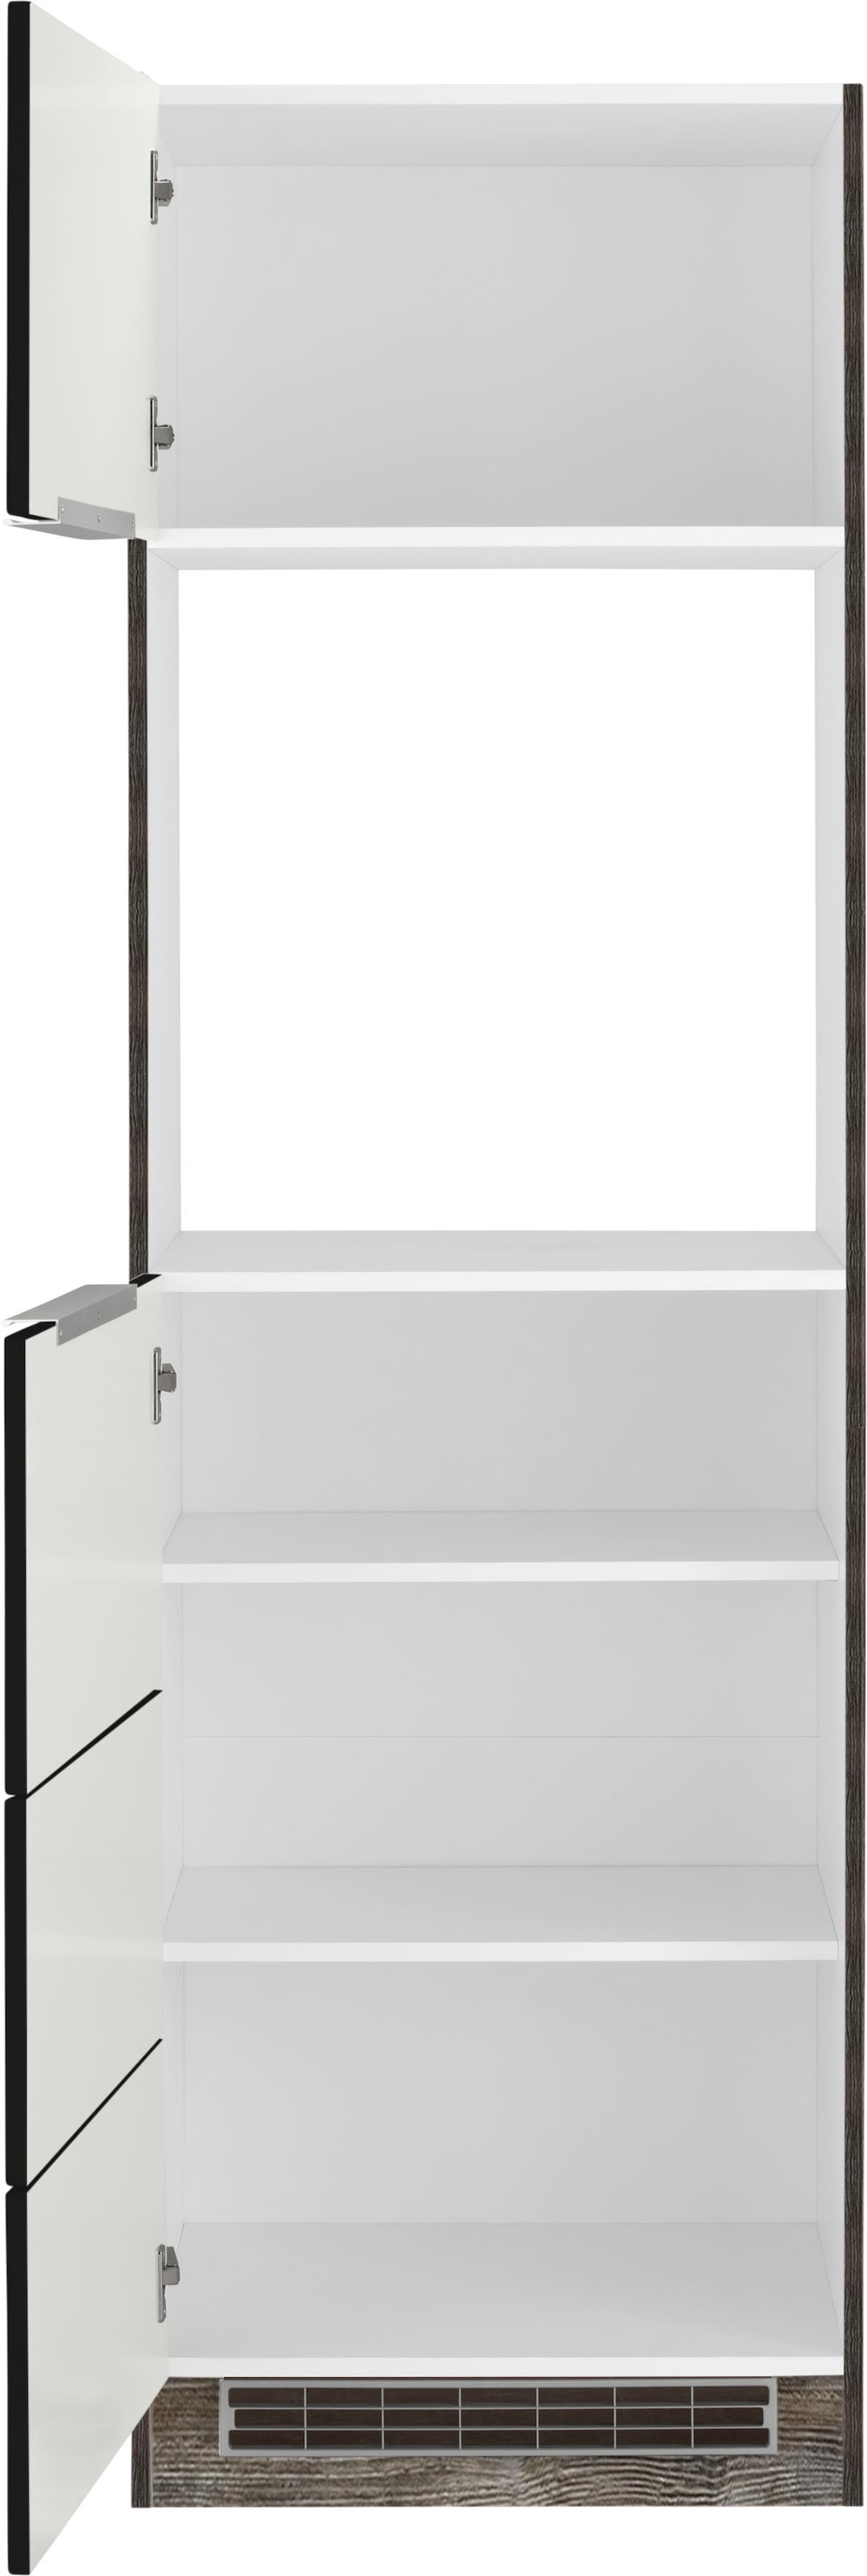 Kochstation Backofenumbauschrank »KS-Brindisi«, 60 cm breit, 200 cm hoch, viel Stauraum